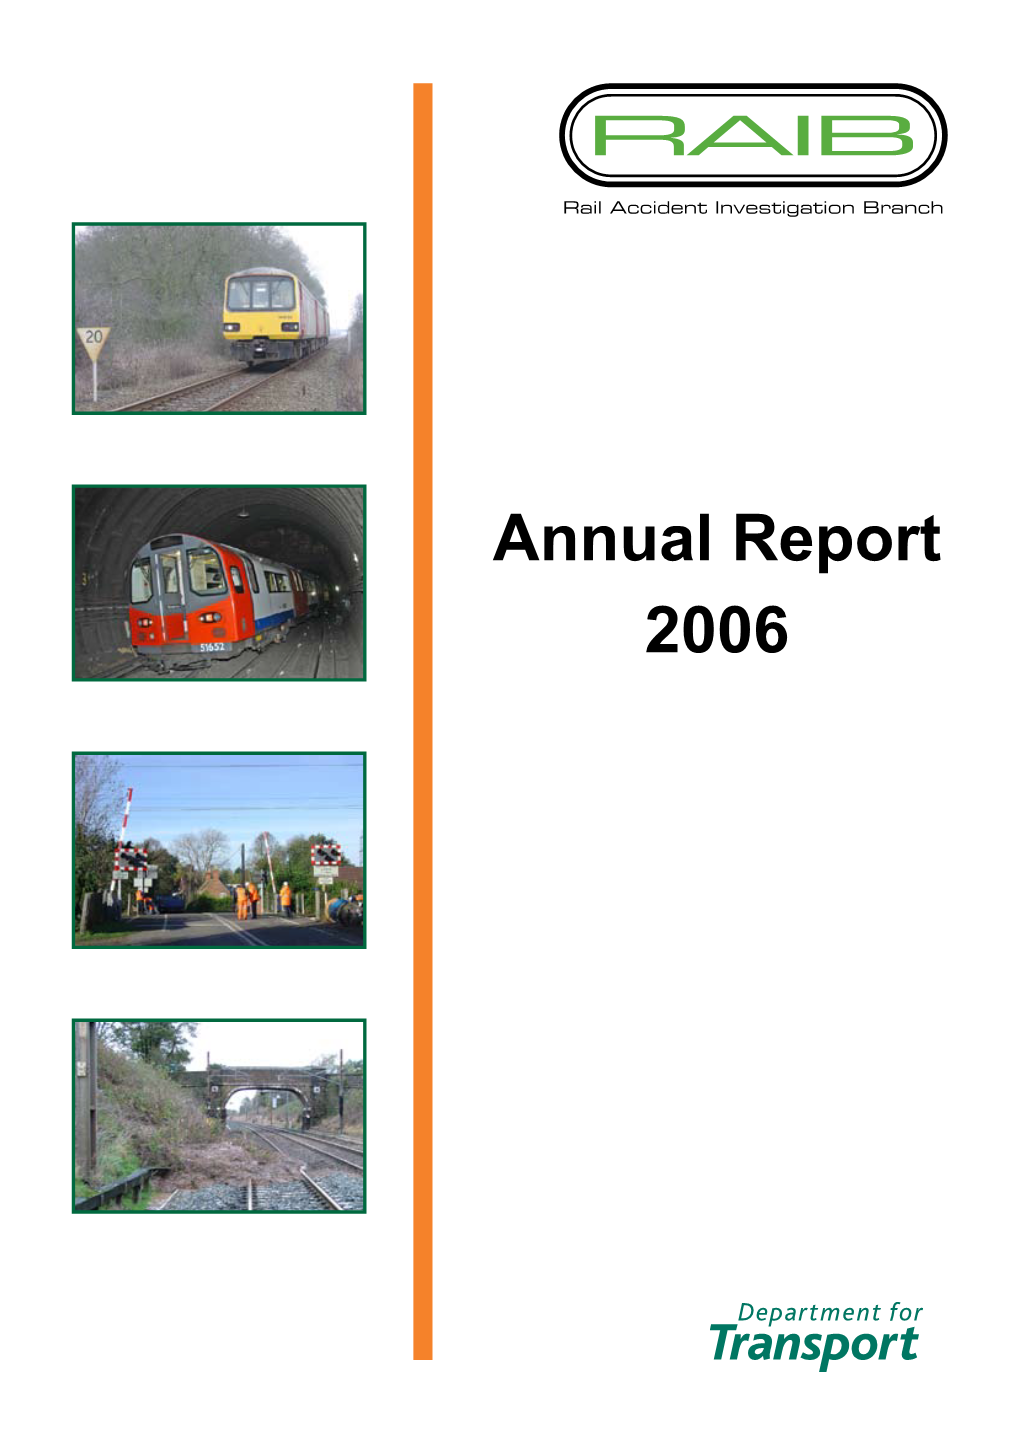 Annual Report 2006 Preface